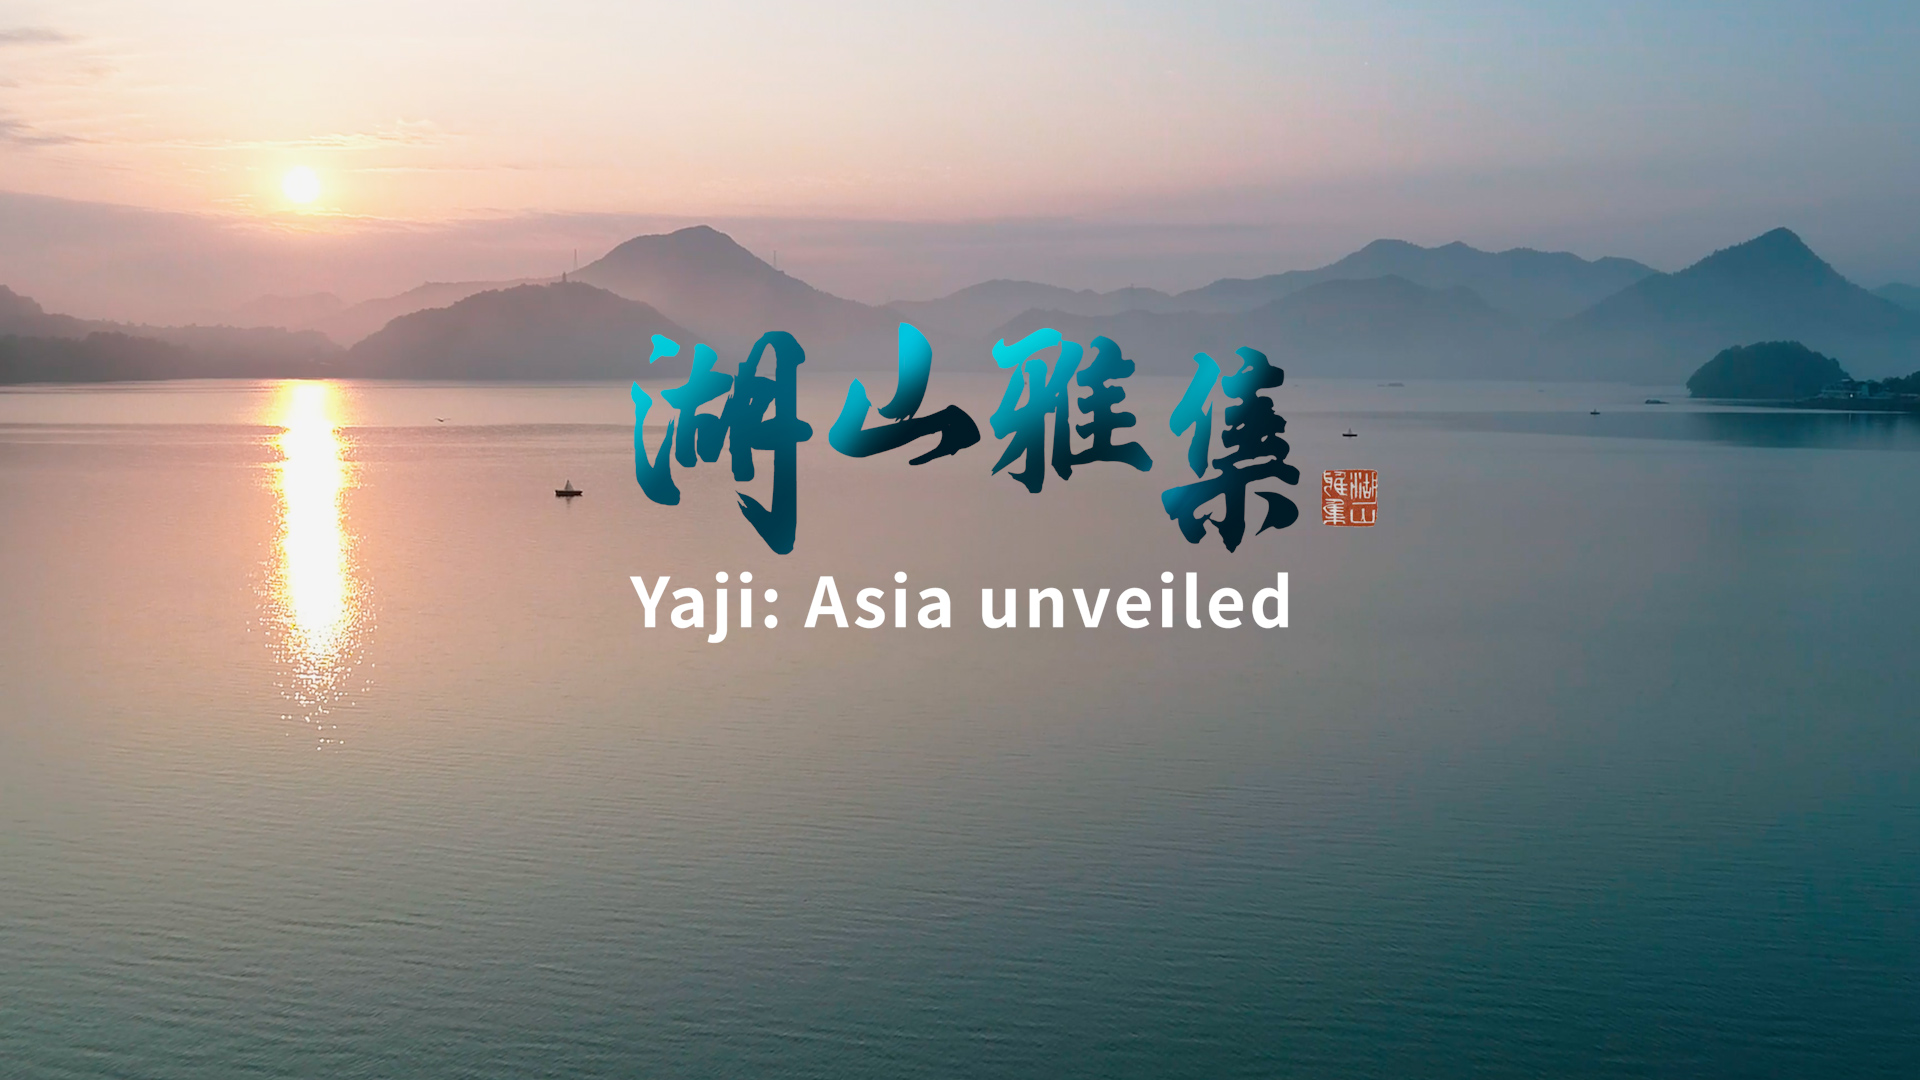 When yaji grips Asia: Demystifying Asia through cultural encounters